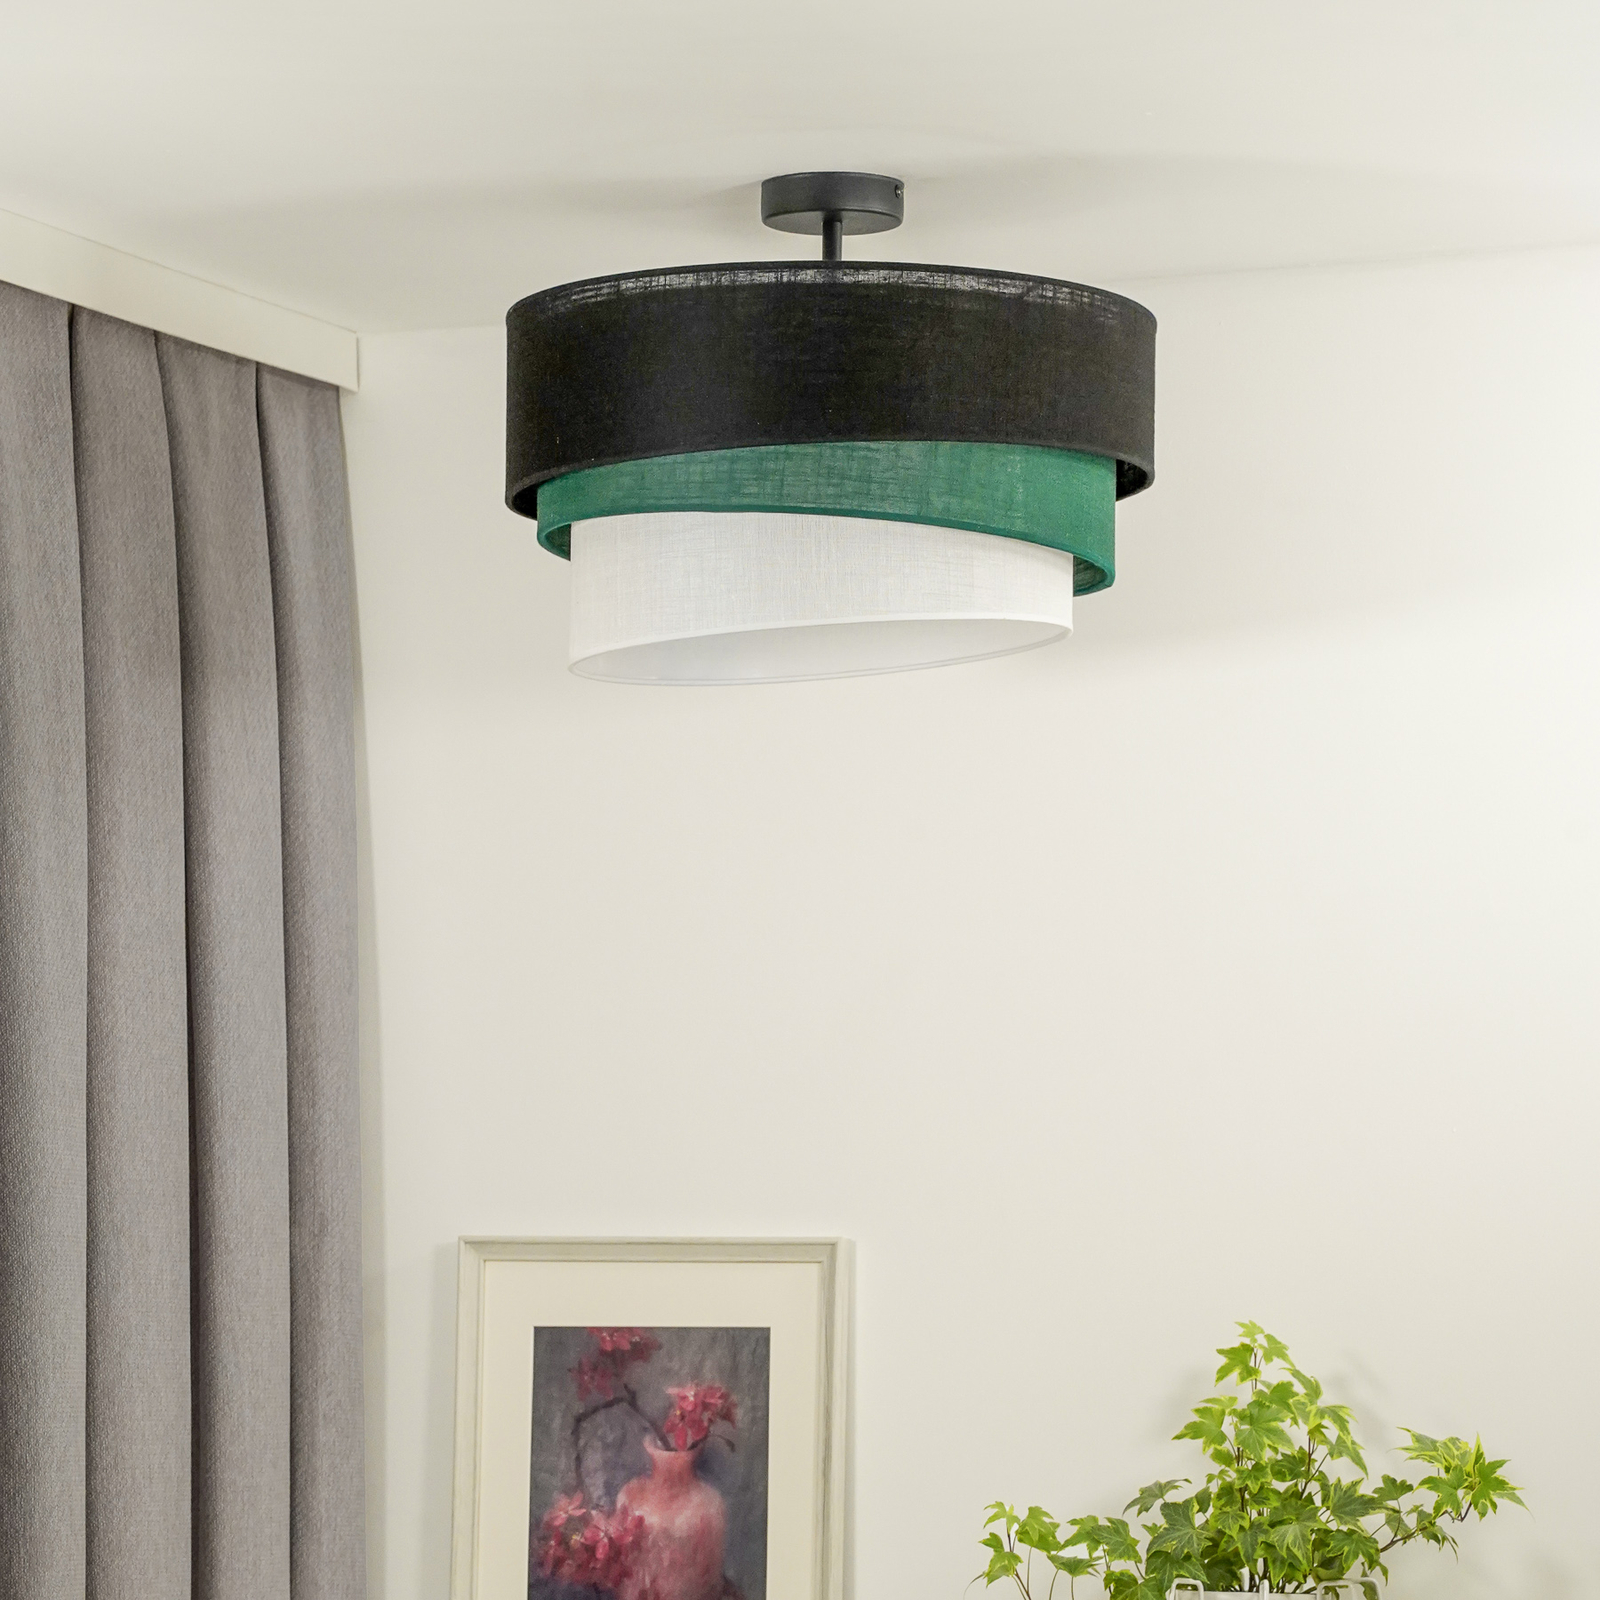 Euluna loftslampe Trio, sort/grøn/hvid, tekstil, Ø 45 cm